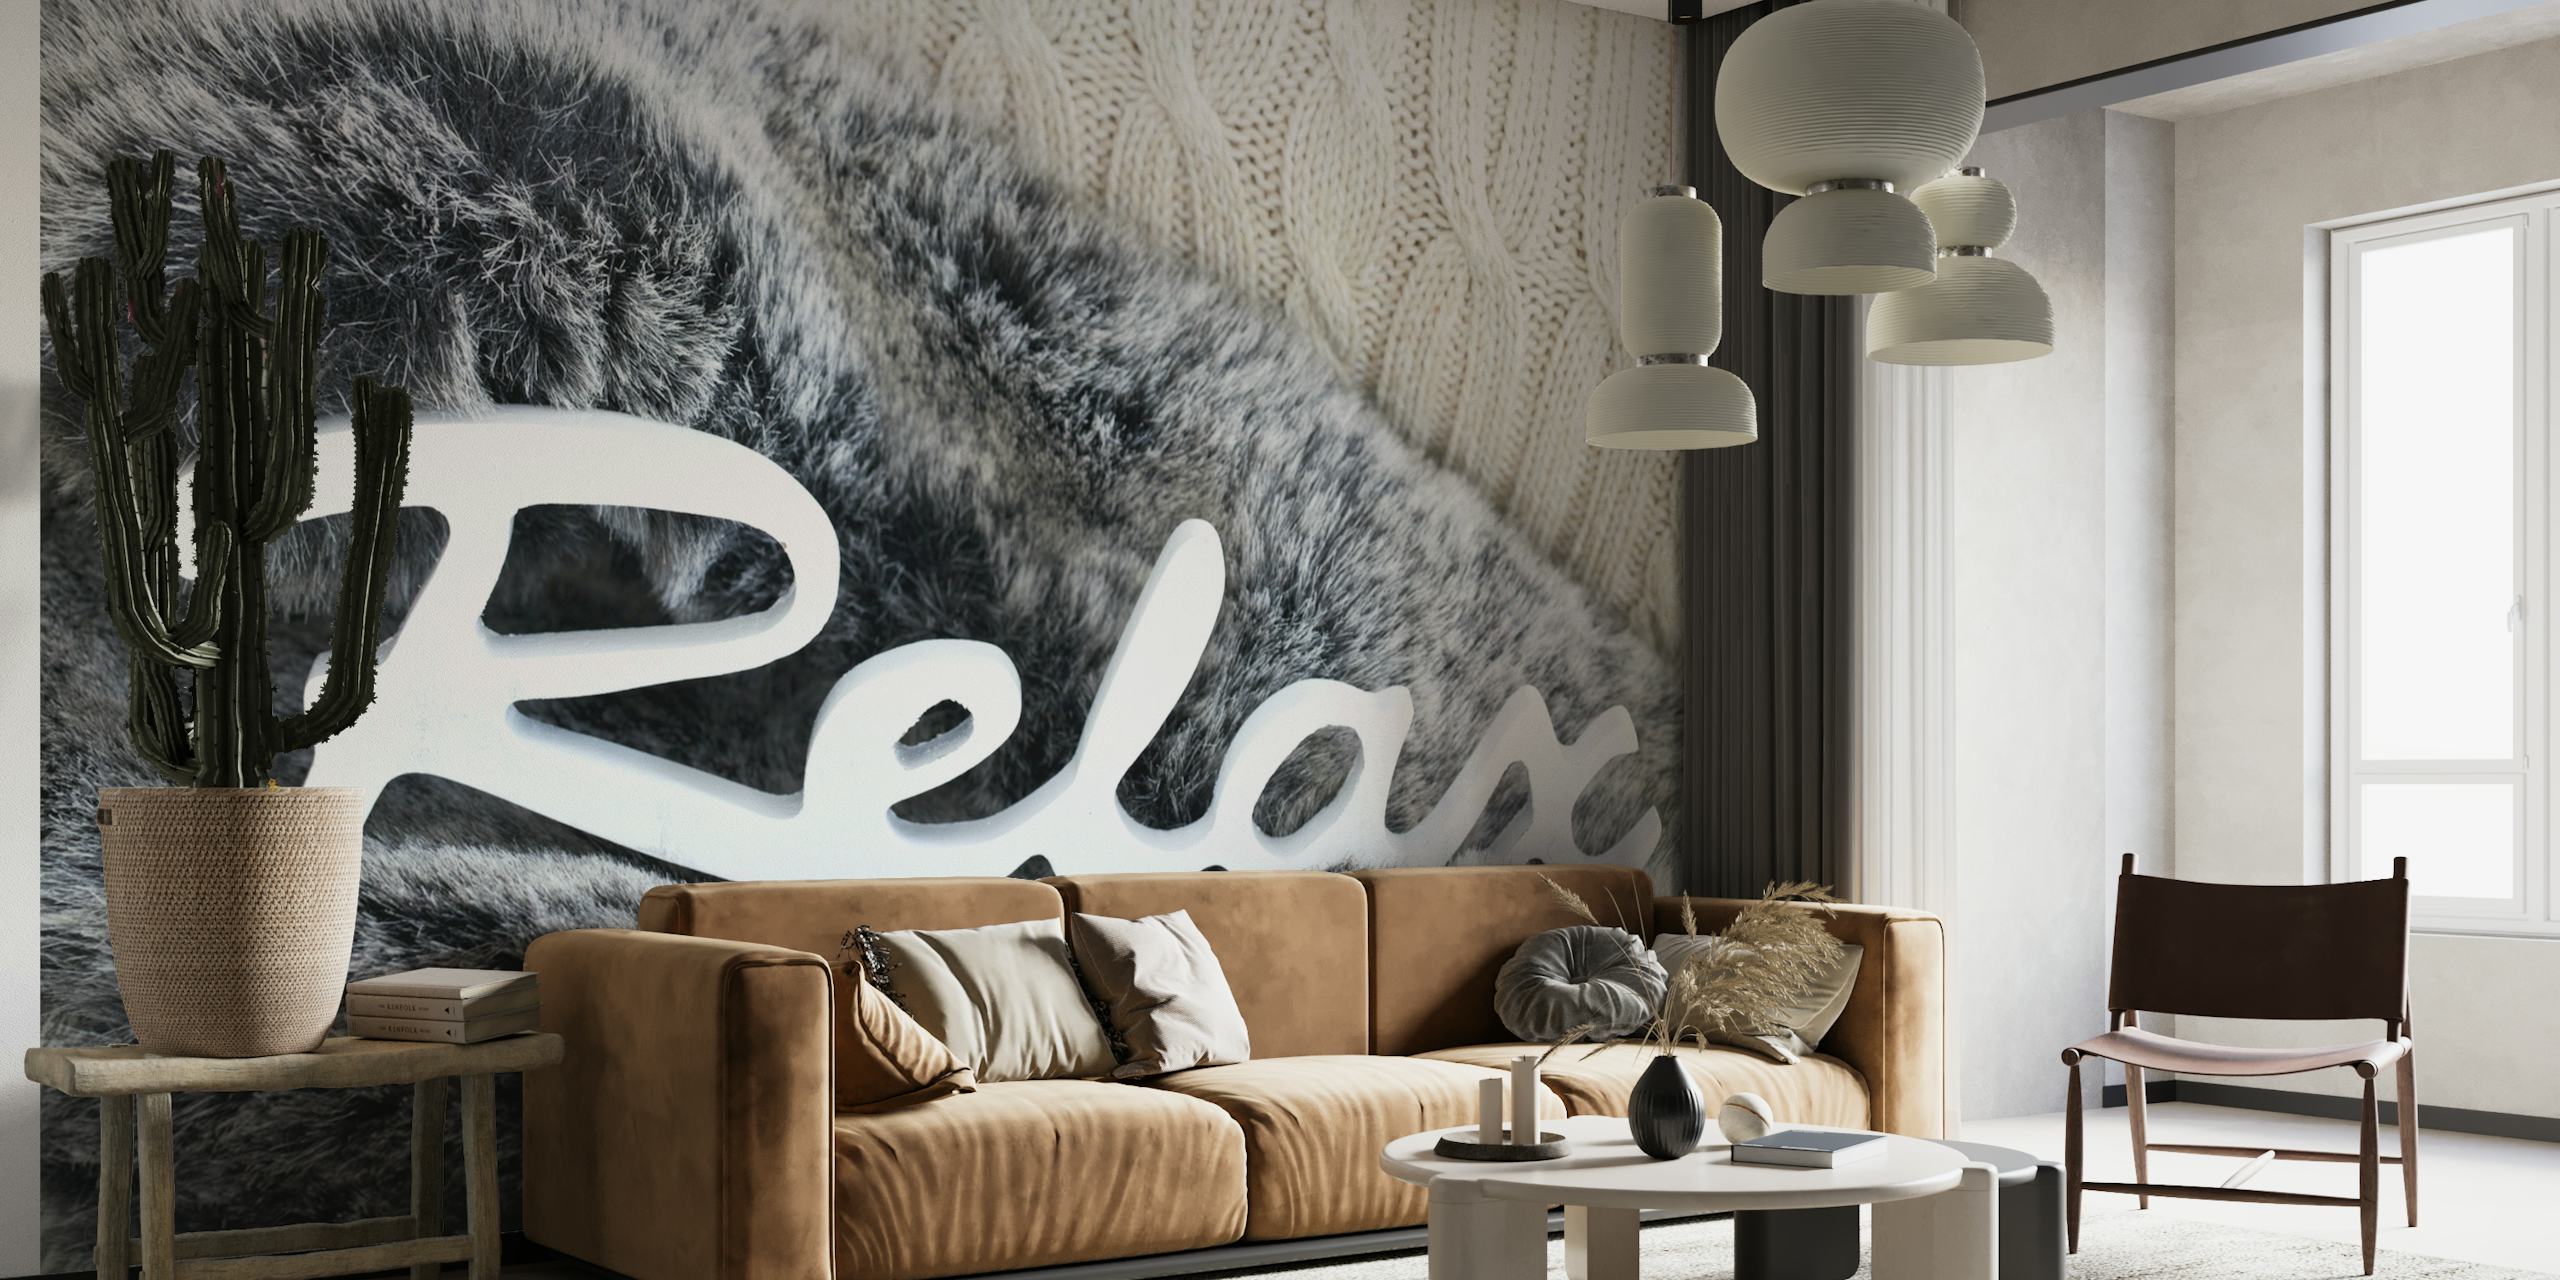 Vægmaleri med simuleret pelstekstur og ordet 'Relax' i stilfuldt skrift